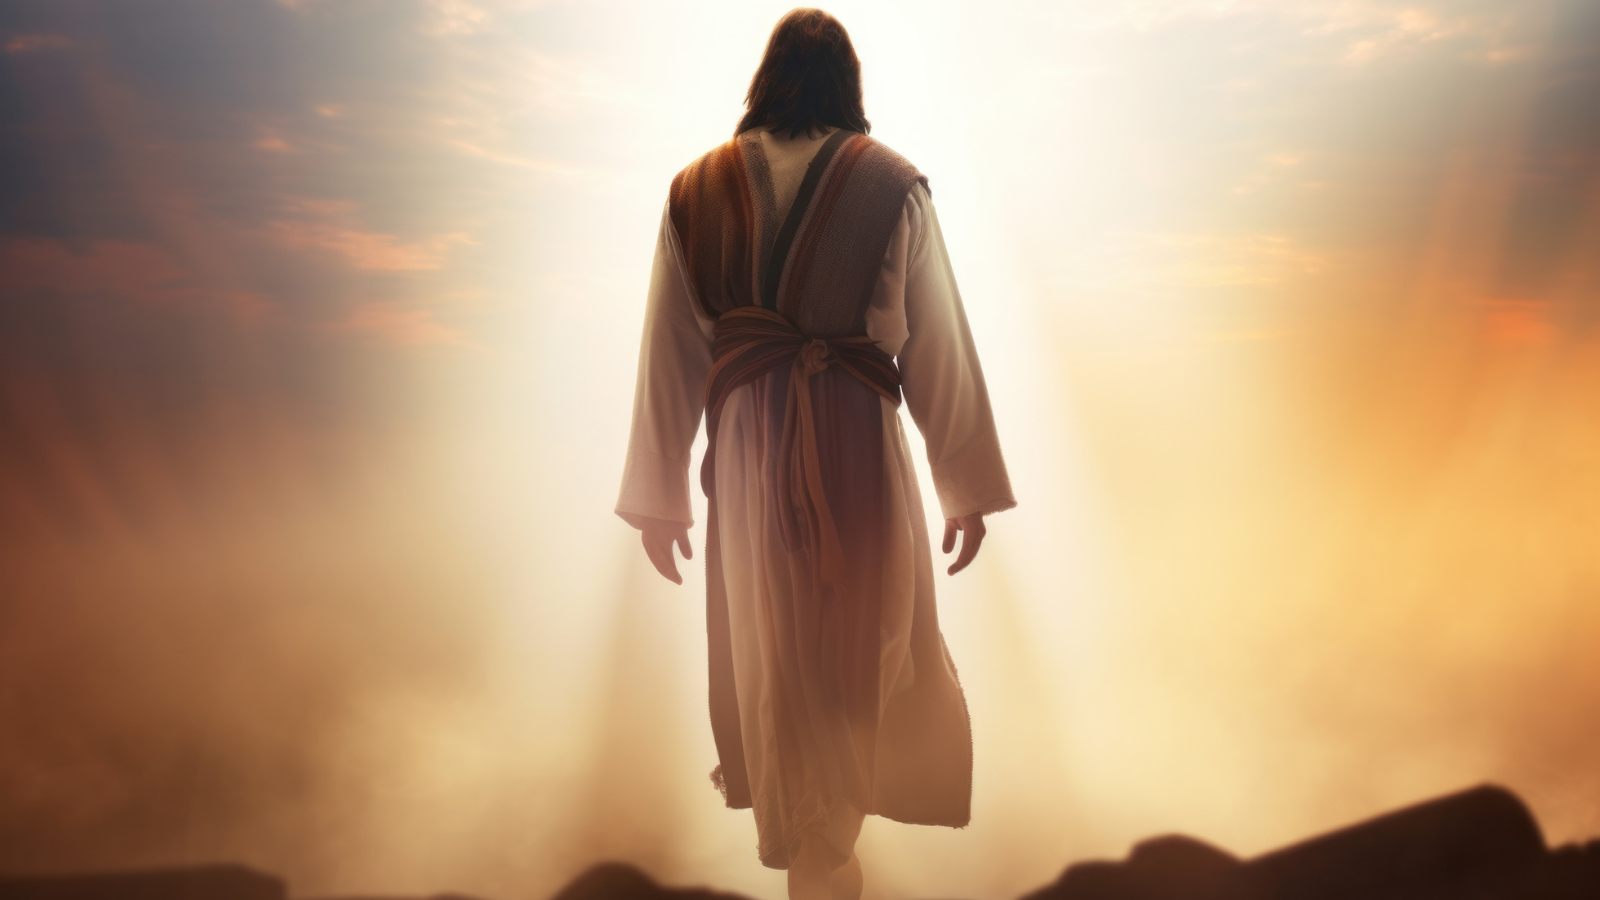 An image of Jesus walking.